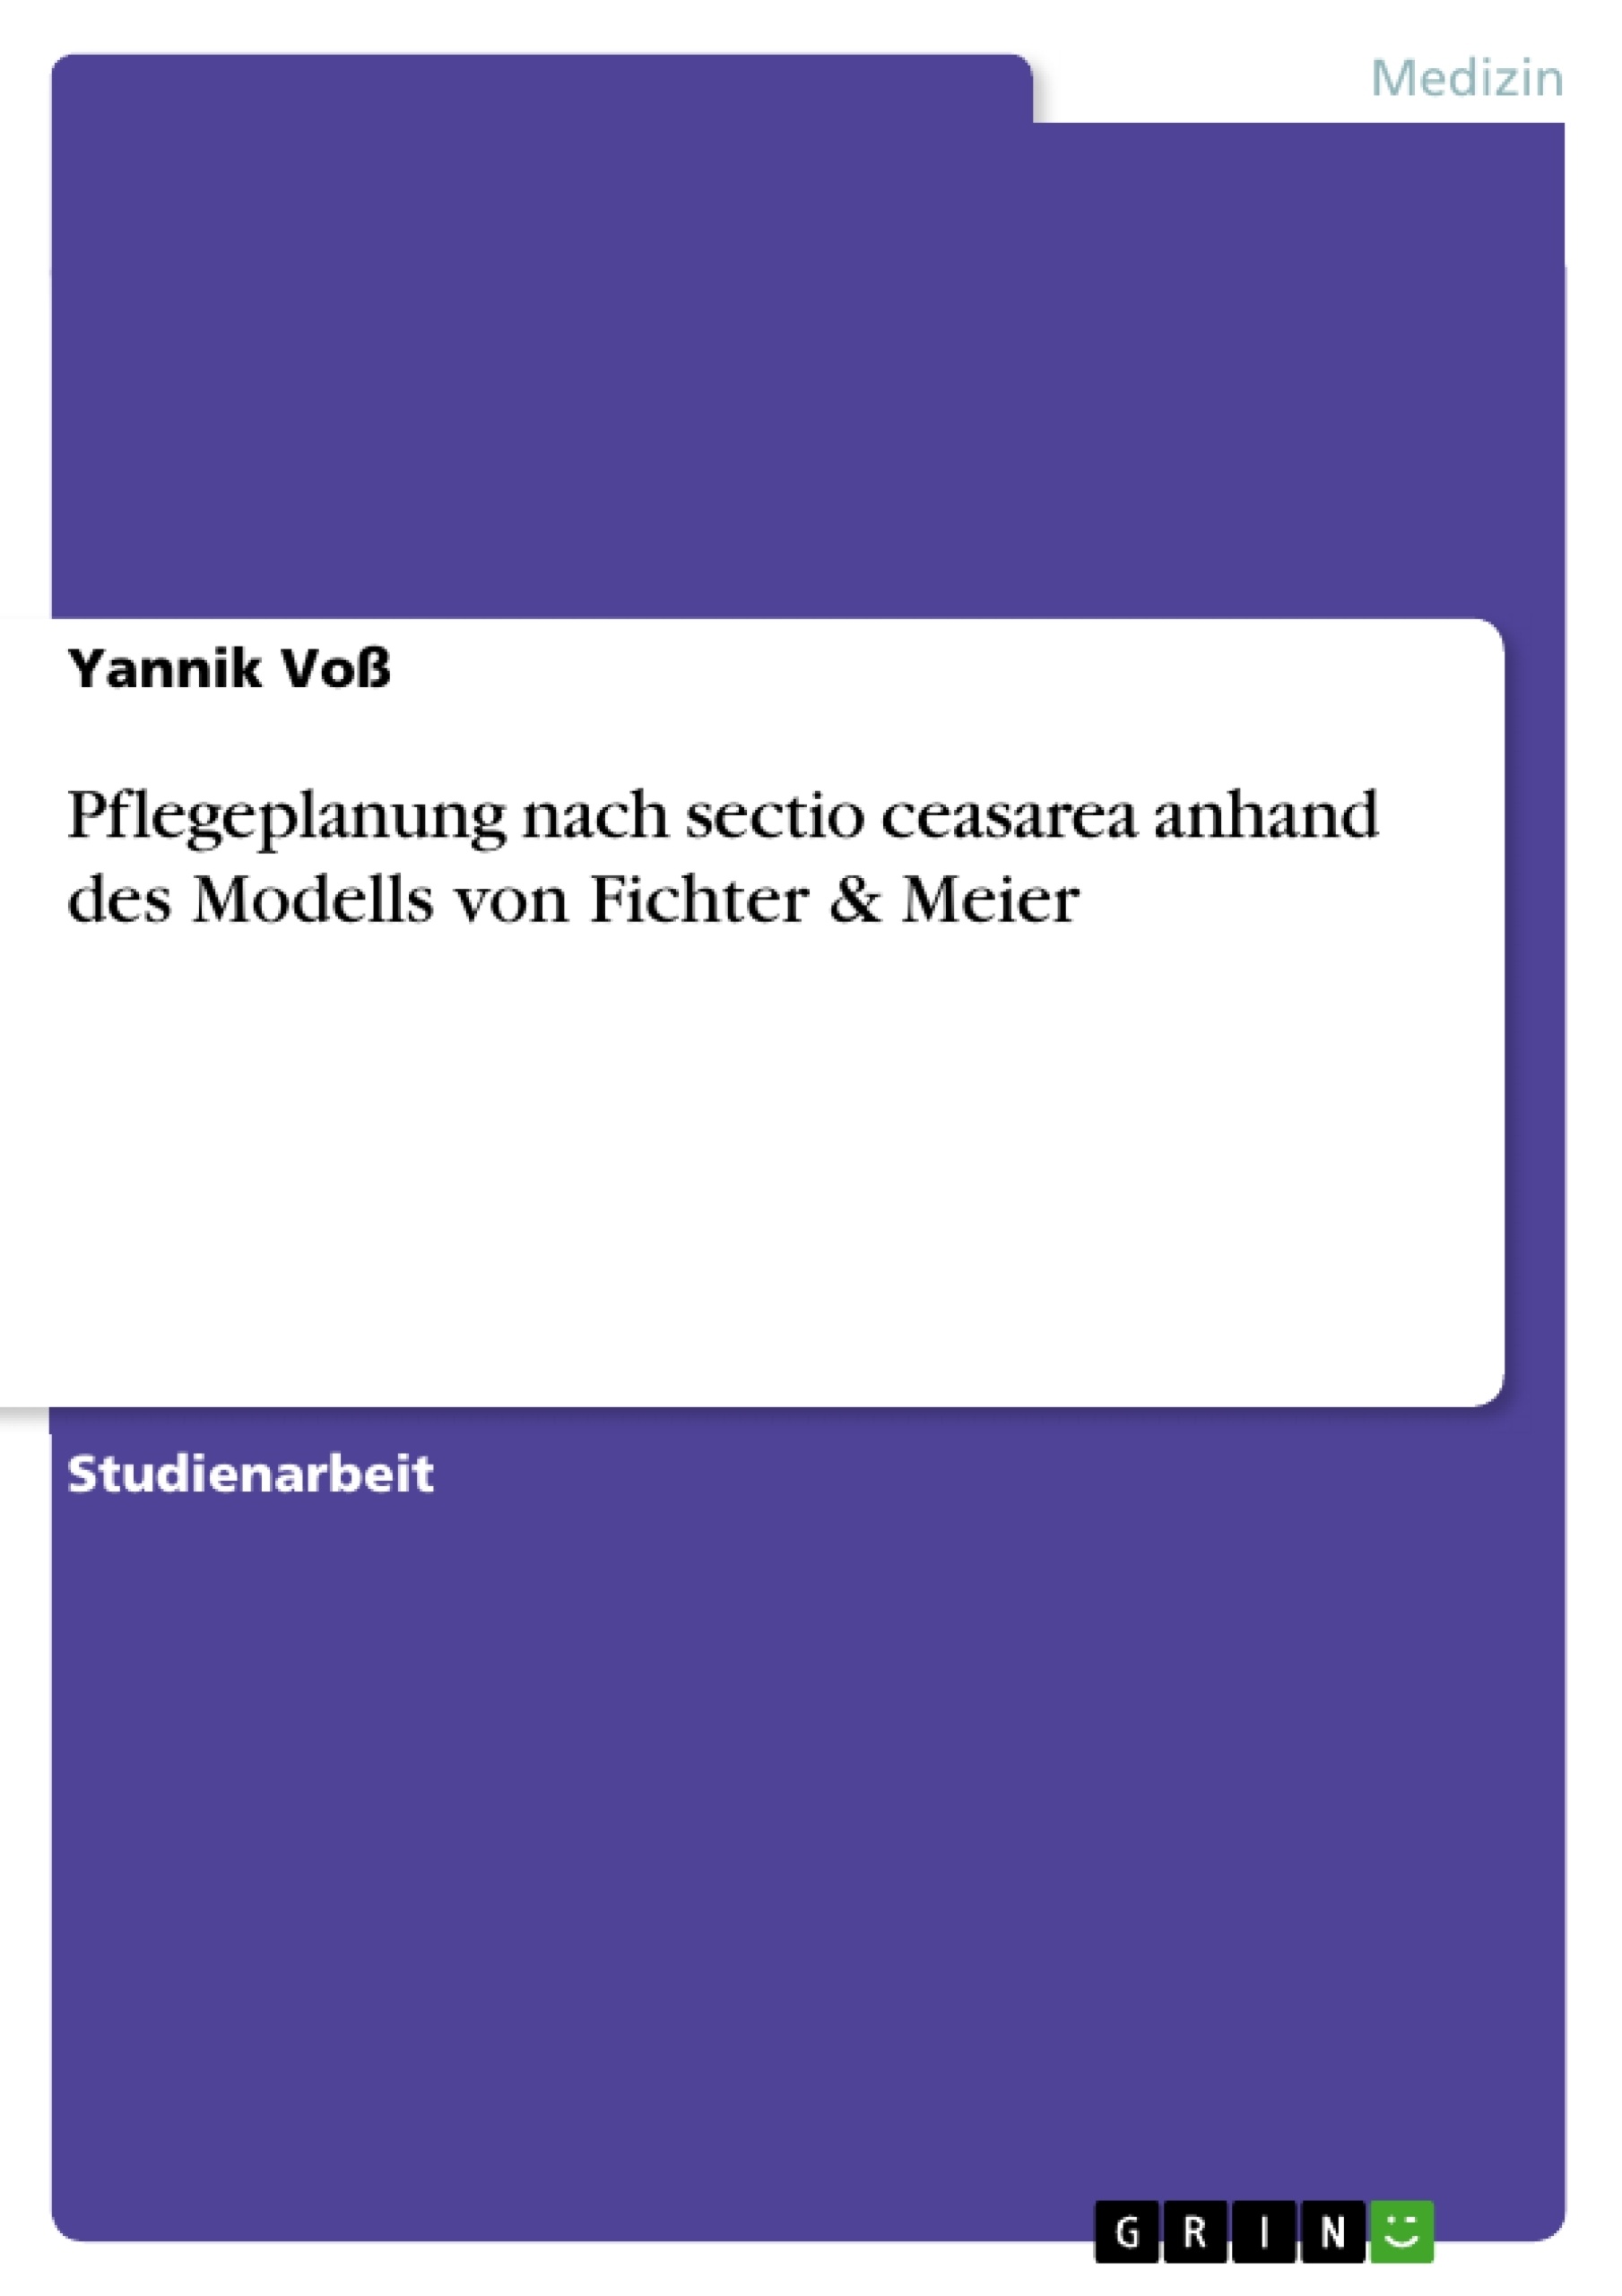 Title: Pflegeplanung nach sectio ceasarea anhand des Modells von Fichter & Meier